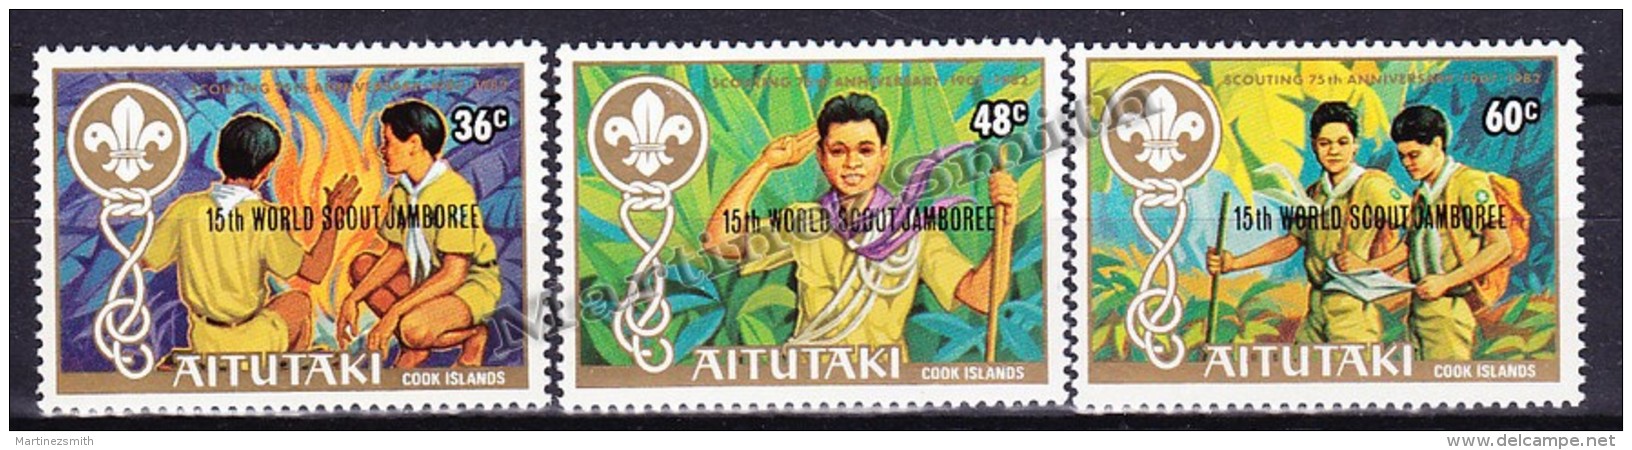 Aitutaki 1983 Yvert  348 - 50 - 15th World Scout Jamboree At Canada  - MNH - Aitutaki